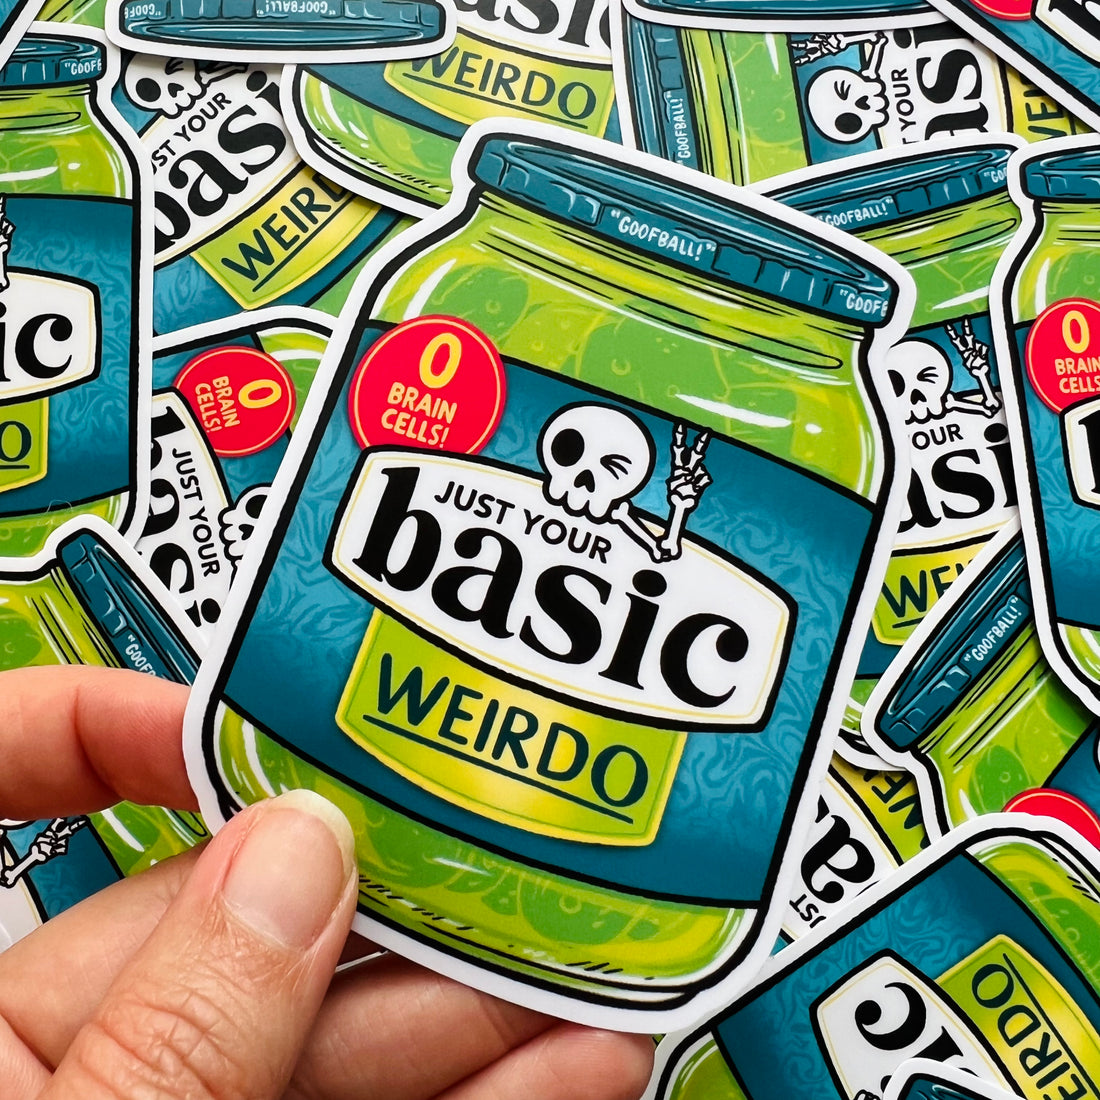 Just Your Basic Weirdo Pickle Sticker